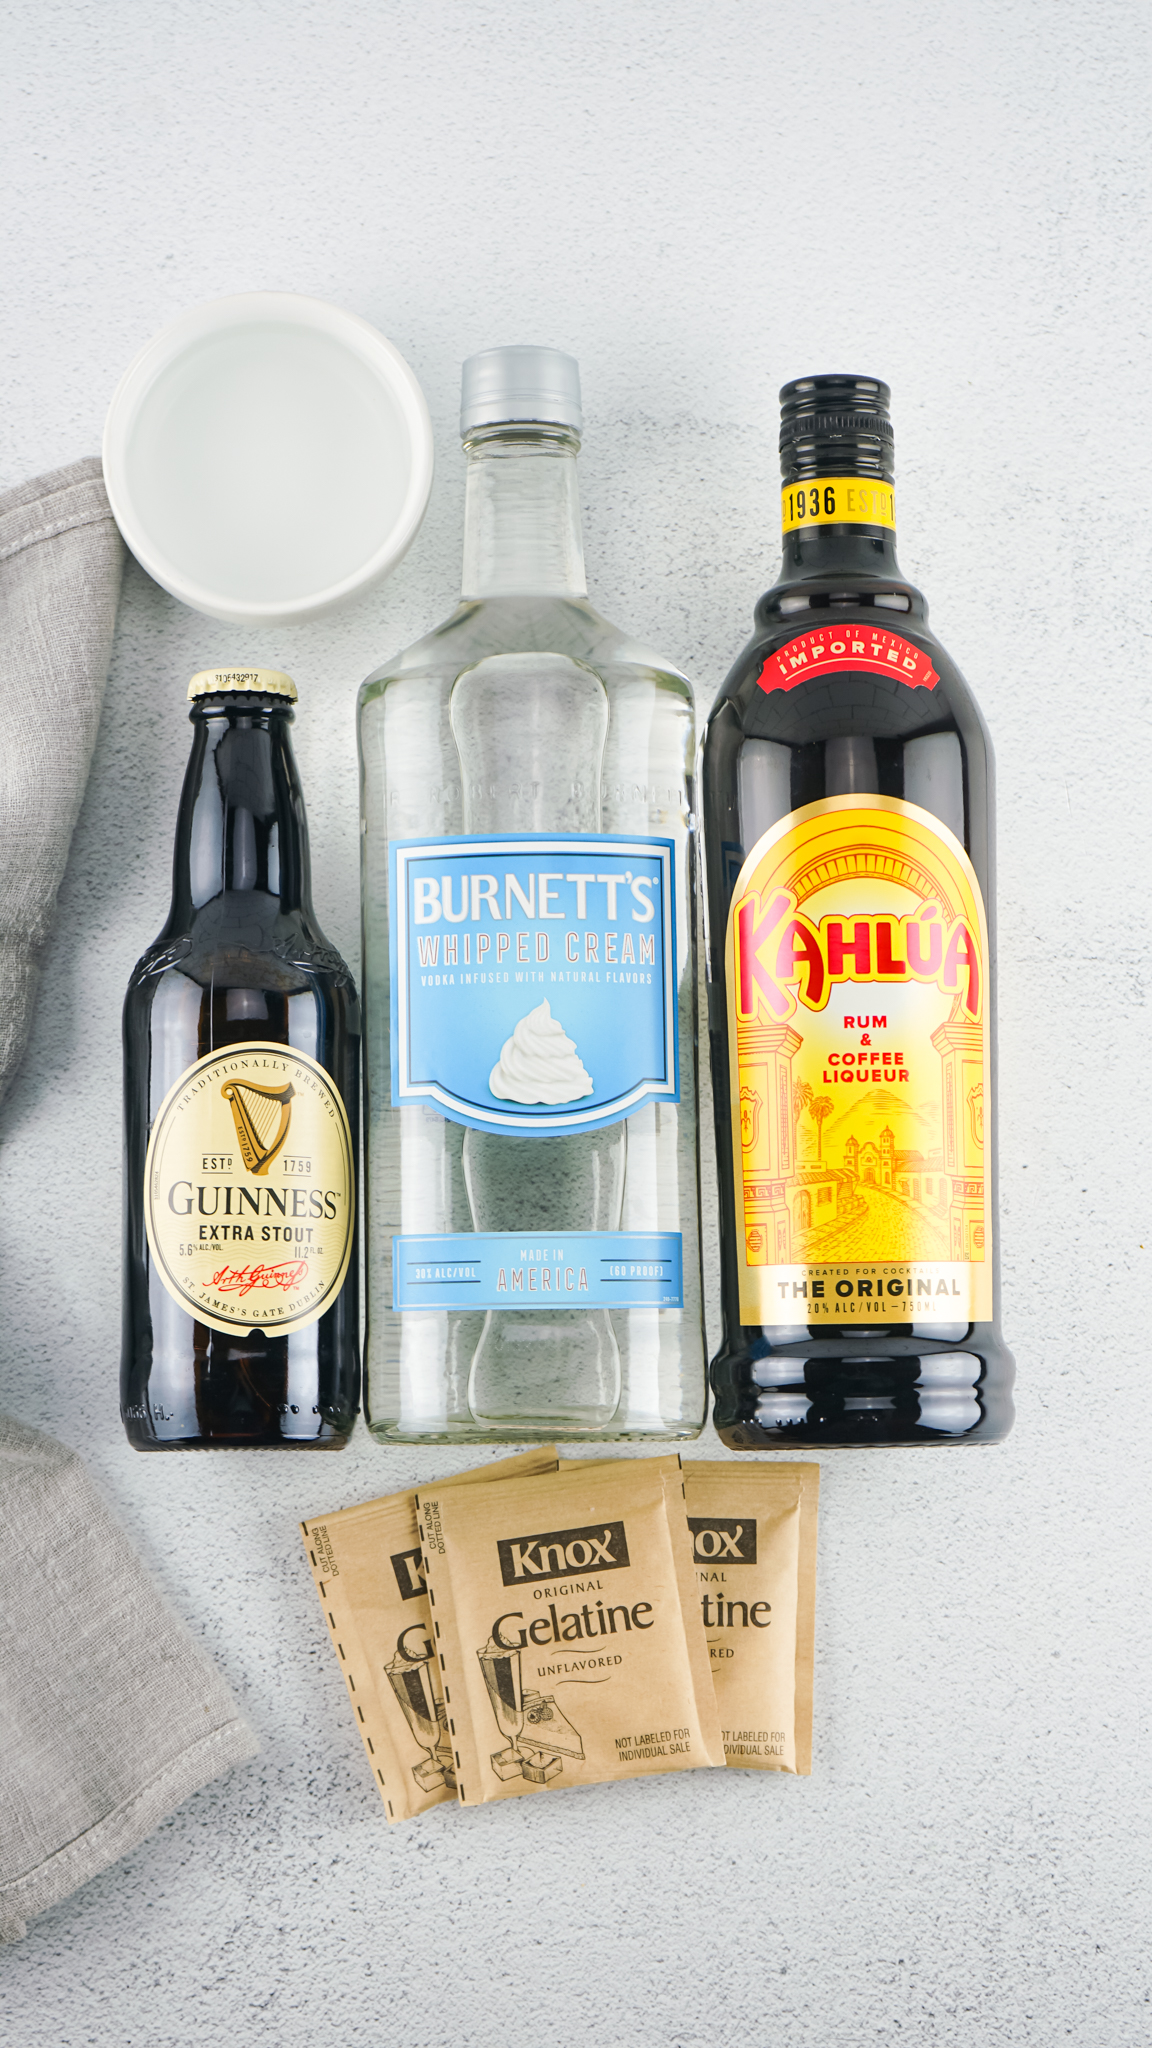 Ingredients for Guinness jello shots - packets of knox gelatin, guinness extra stout bottle, Burnett's whipped cream vodka, and Kahlua.